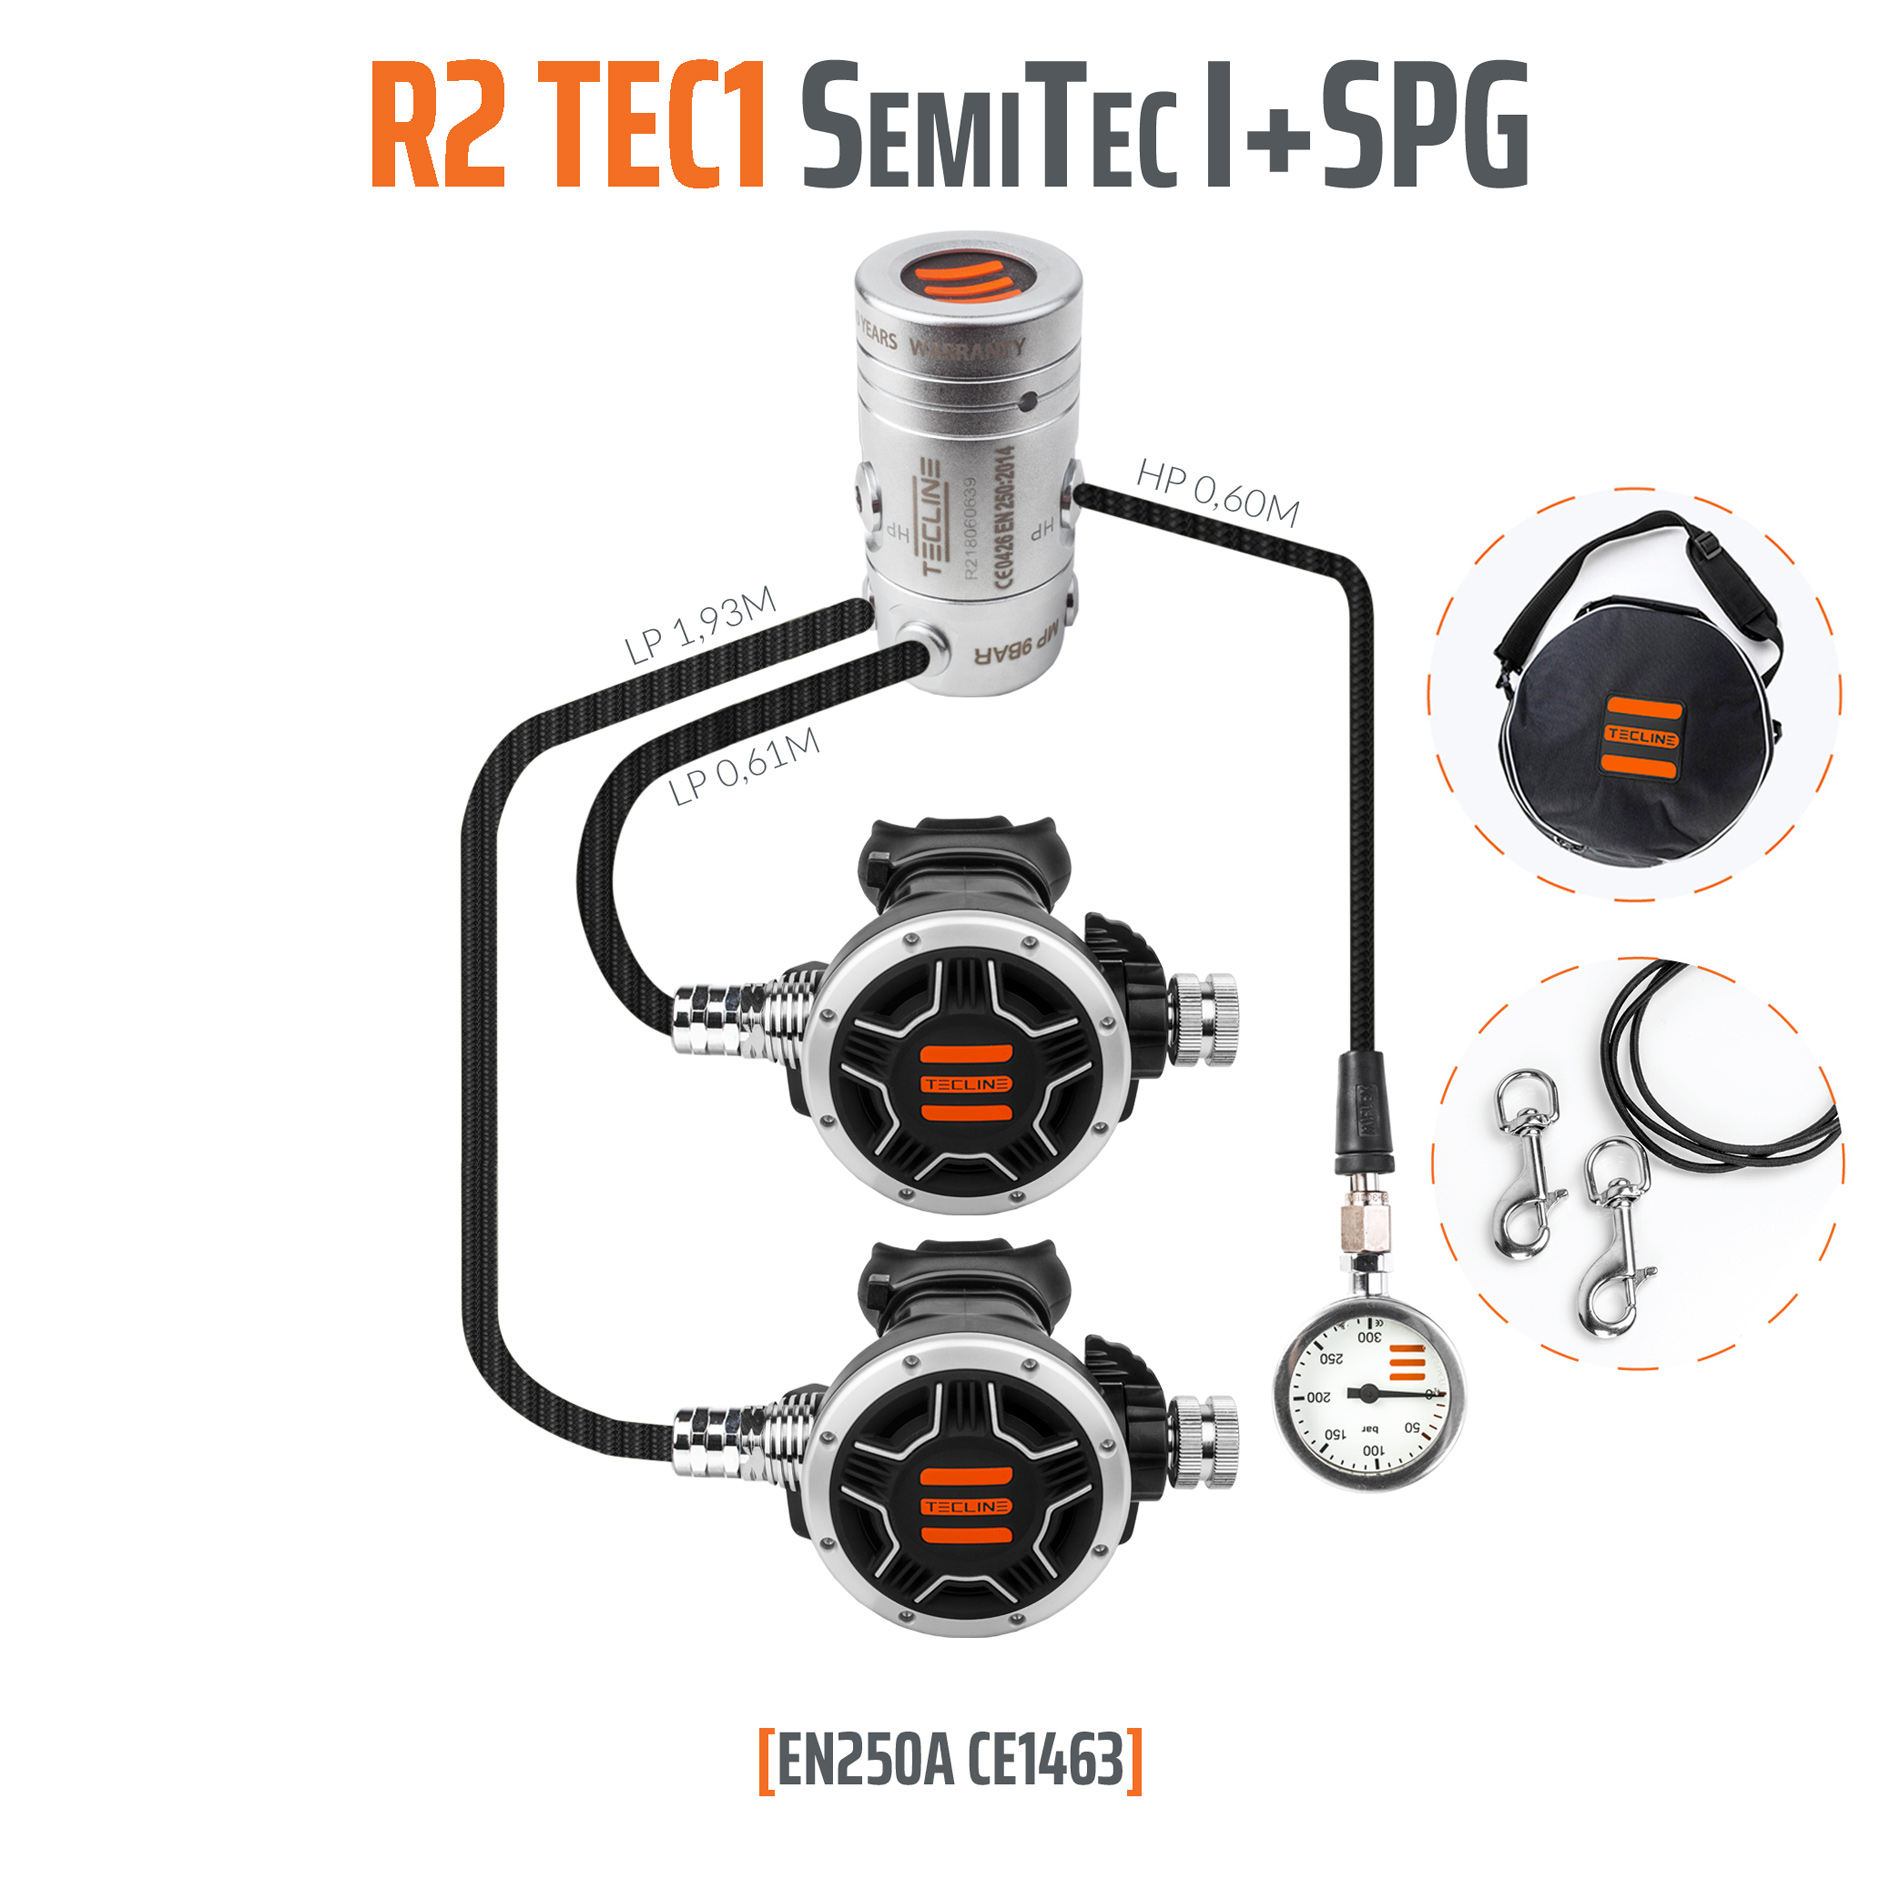 Tecline Regulator R2 TEC1 SemiTec I set with SPG - EN250A